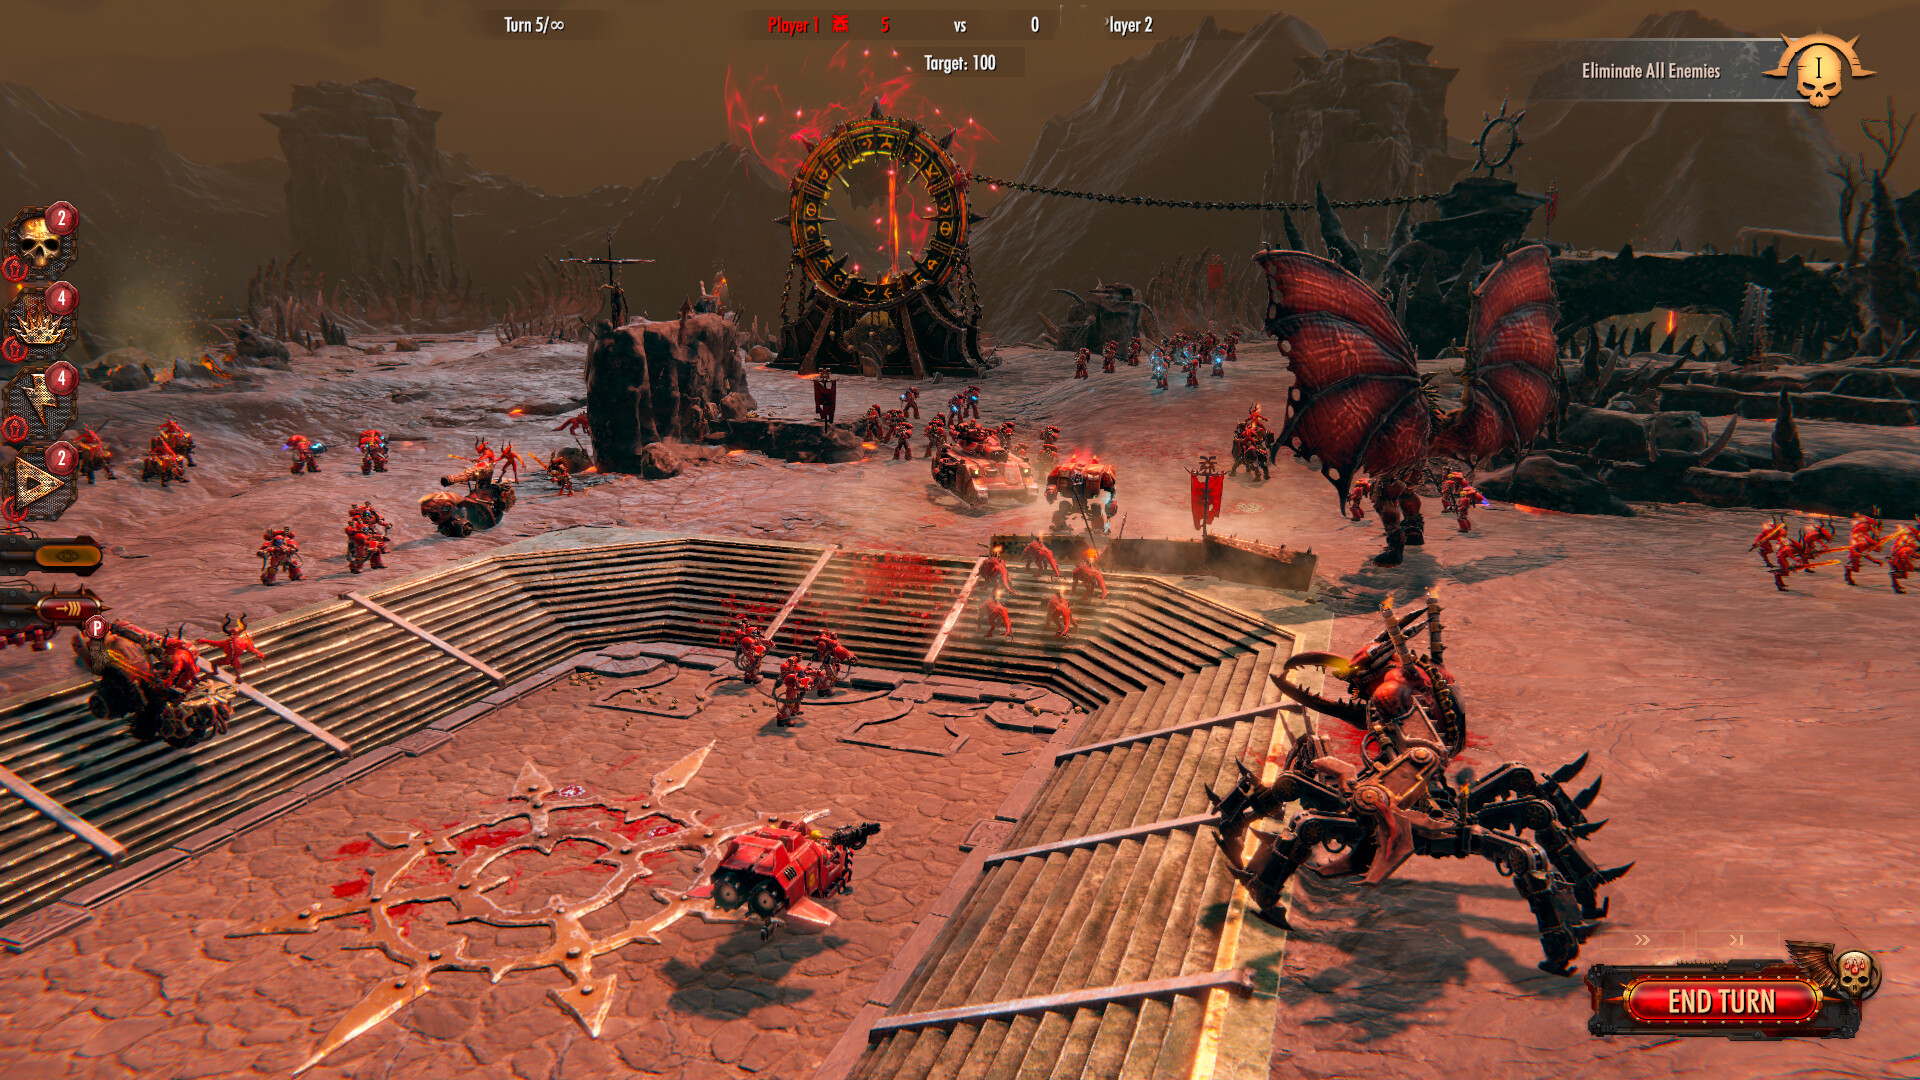 Warhammer 40,000: Battlesector - Daemons of Khorne DLC Steam CD Key 3.71 $